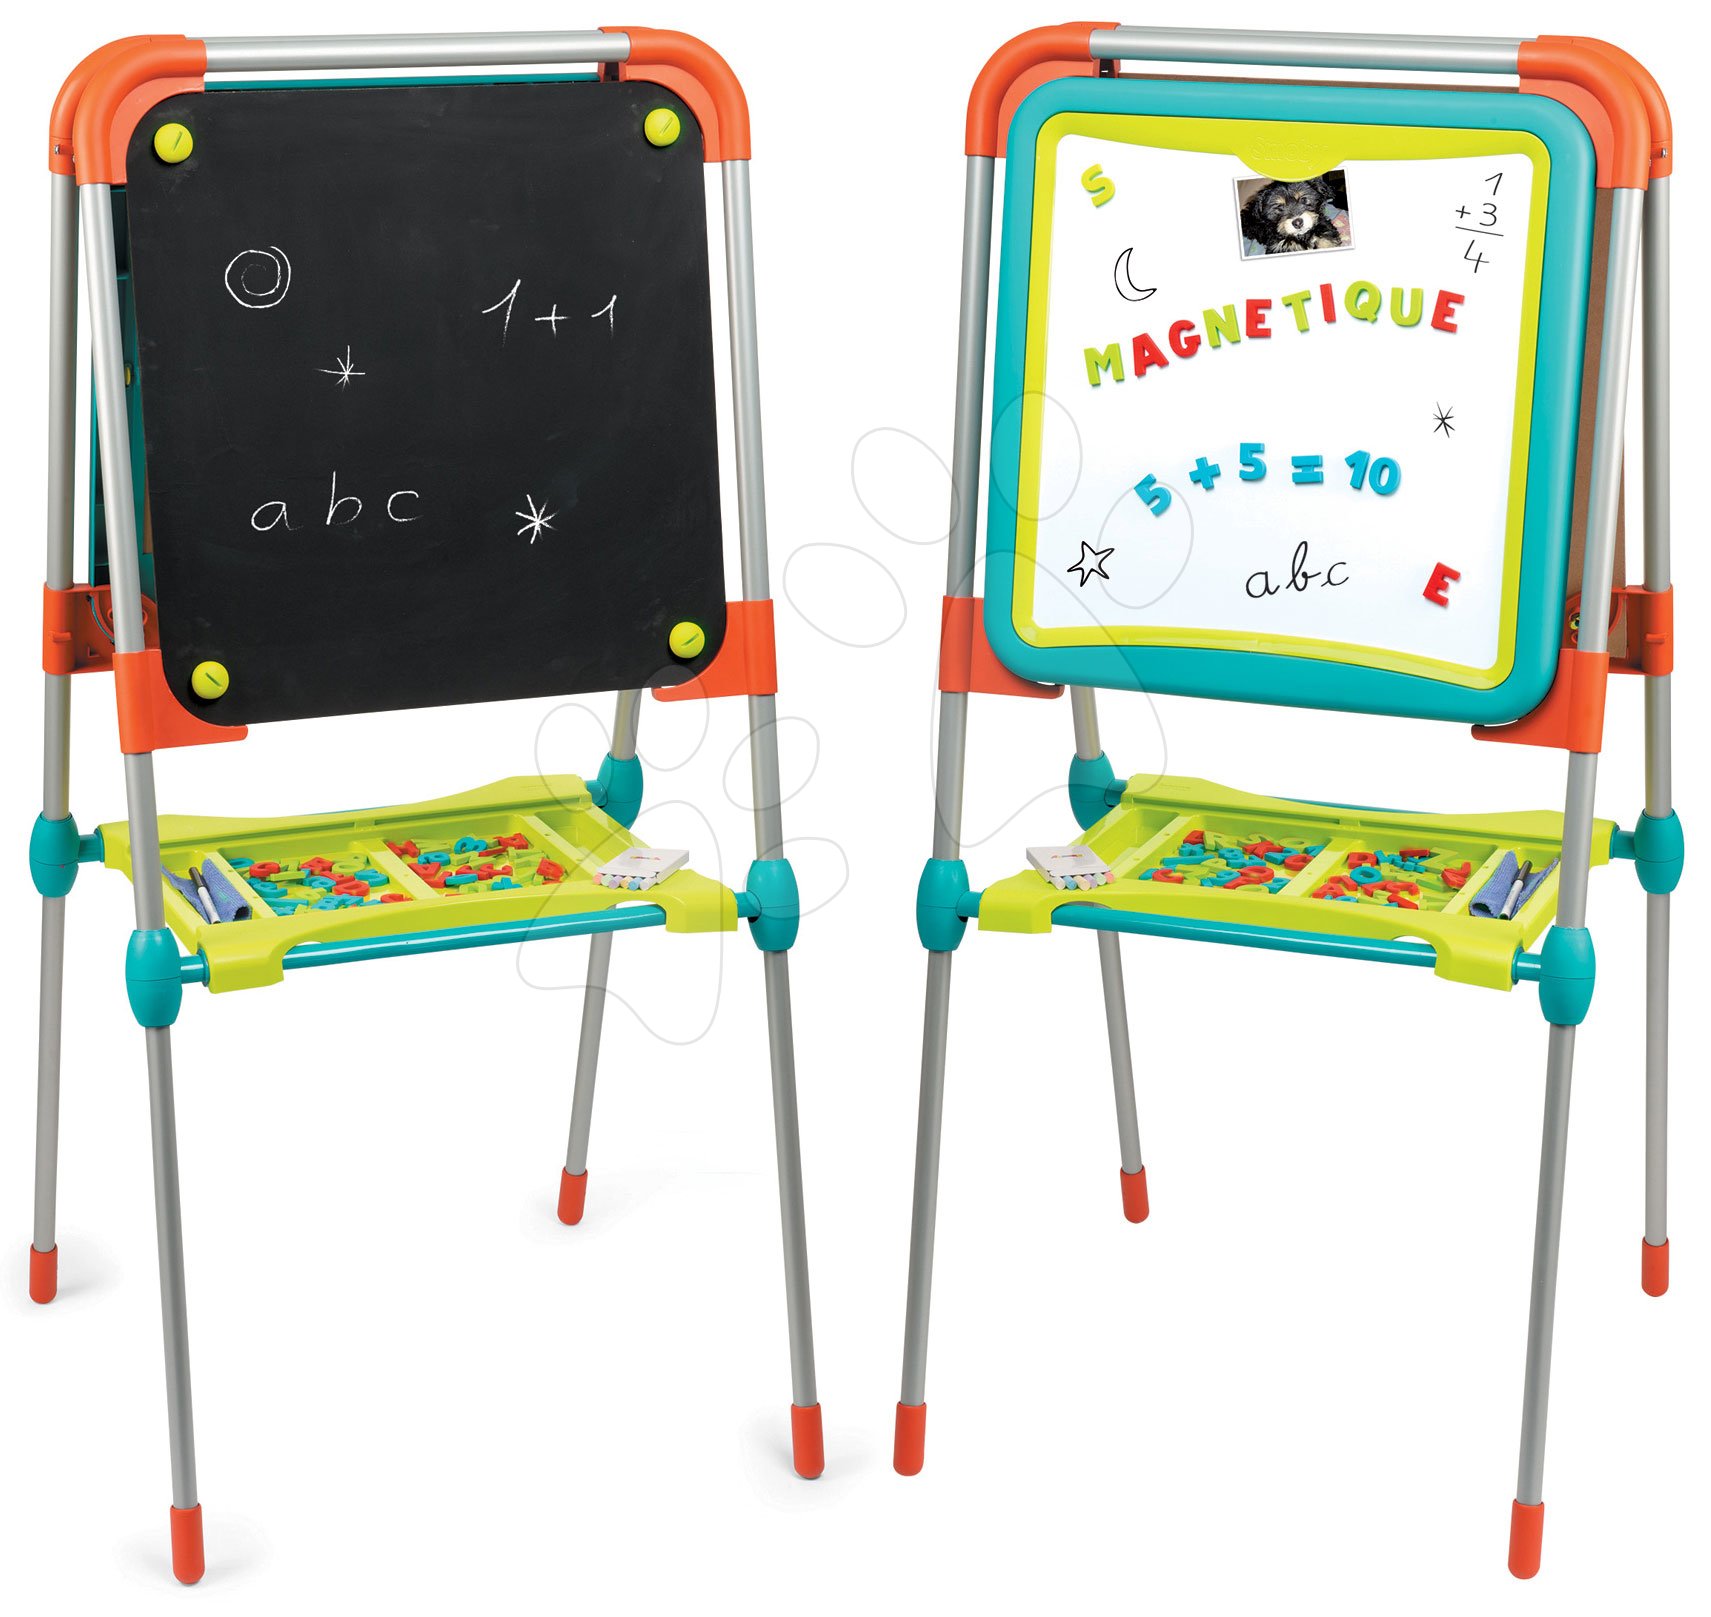 Školské tabule - Tabuľa na kreslenie a magnetky Ultimate Board Smoby obojstranná skladacia s úložným priestorom a 80 doplnkov